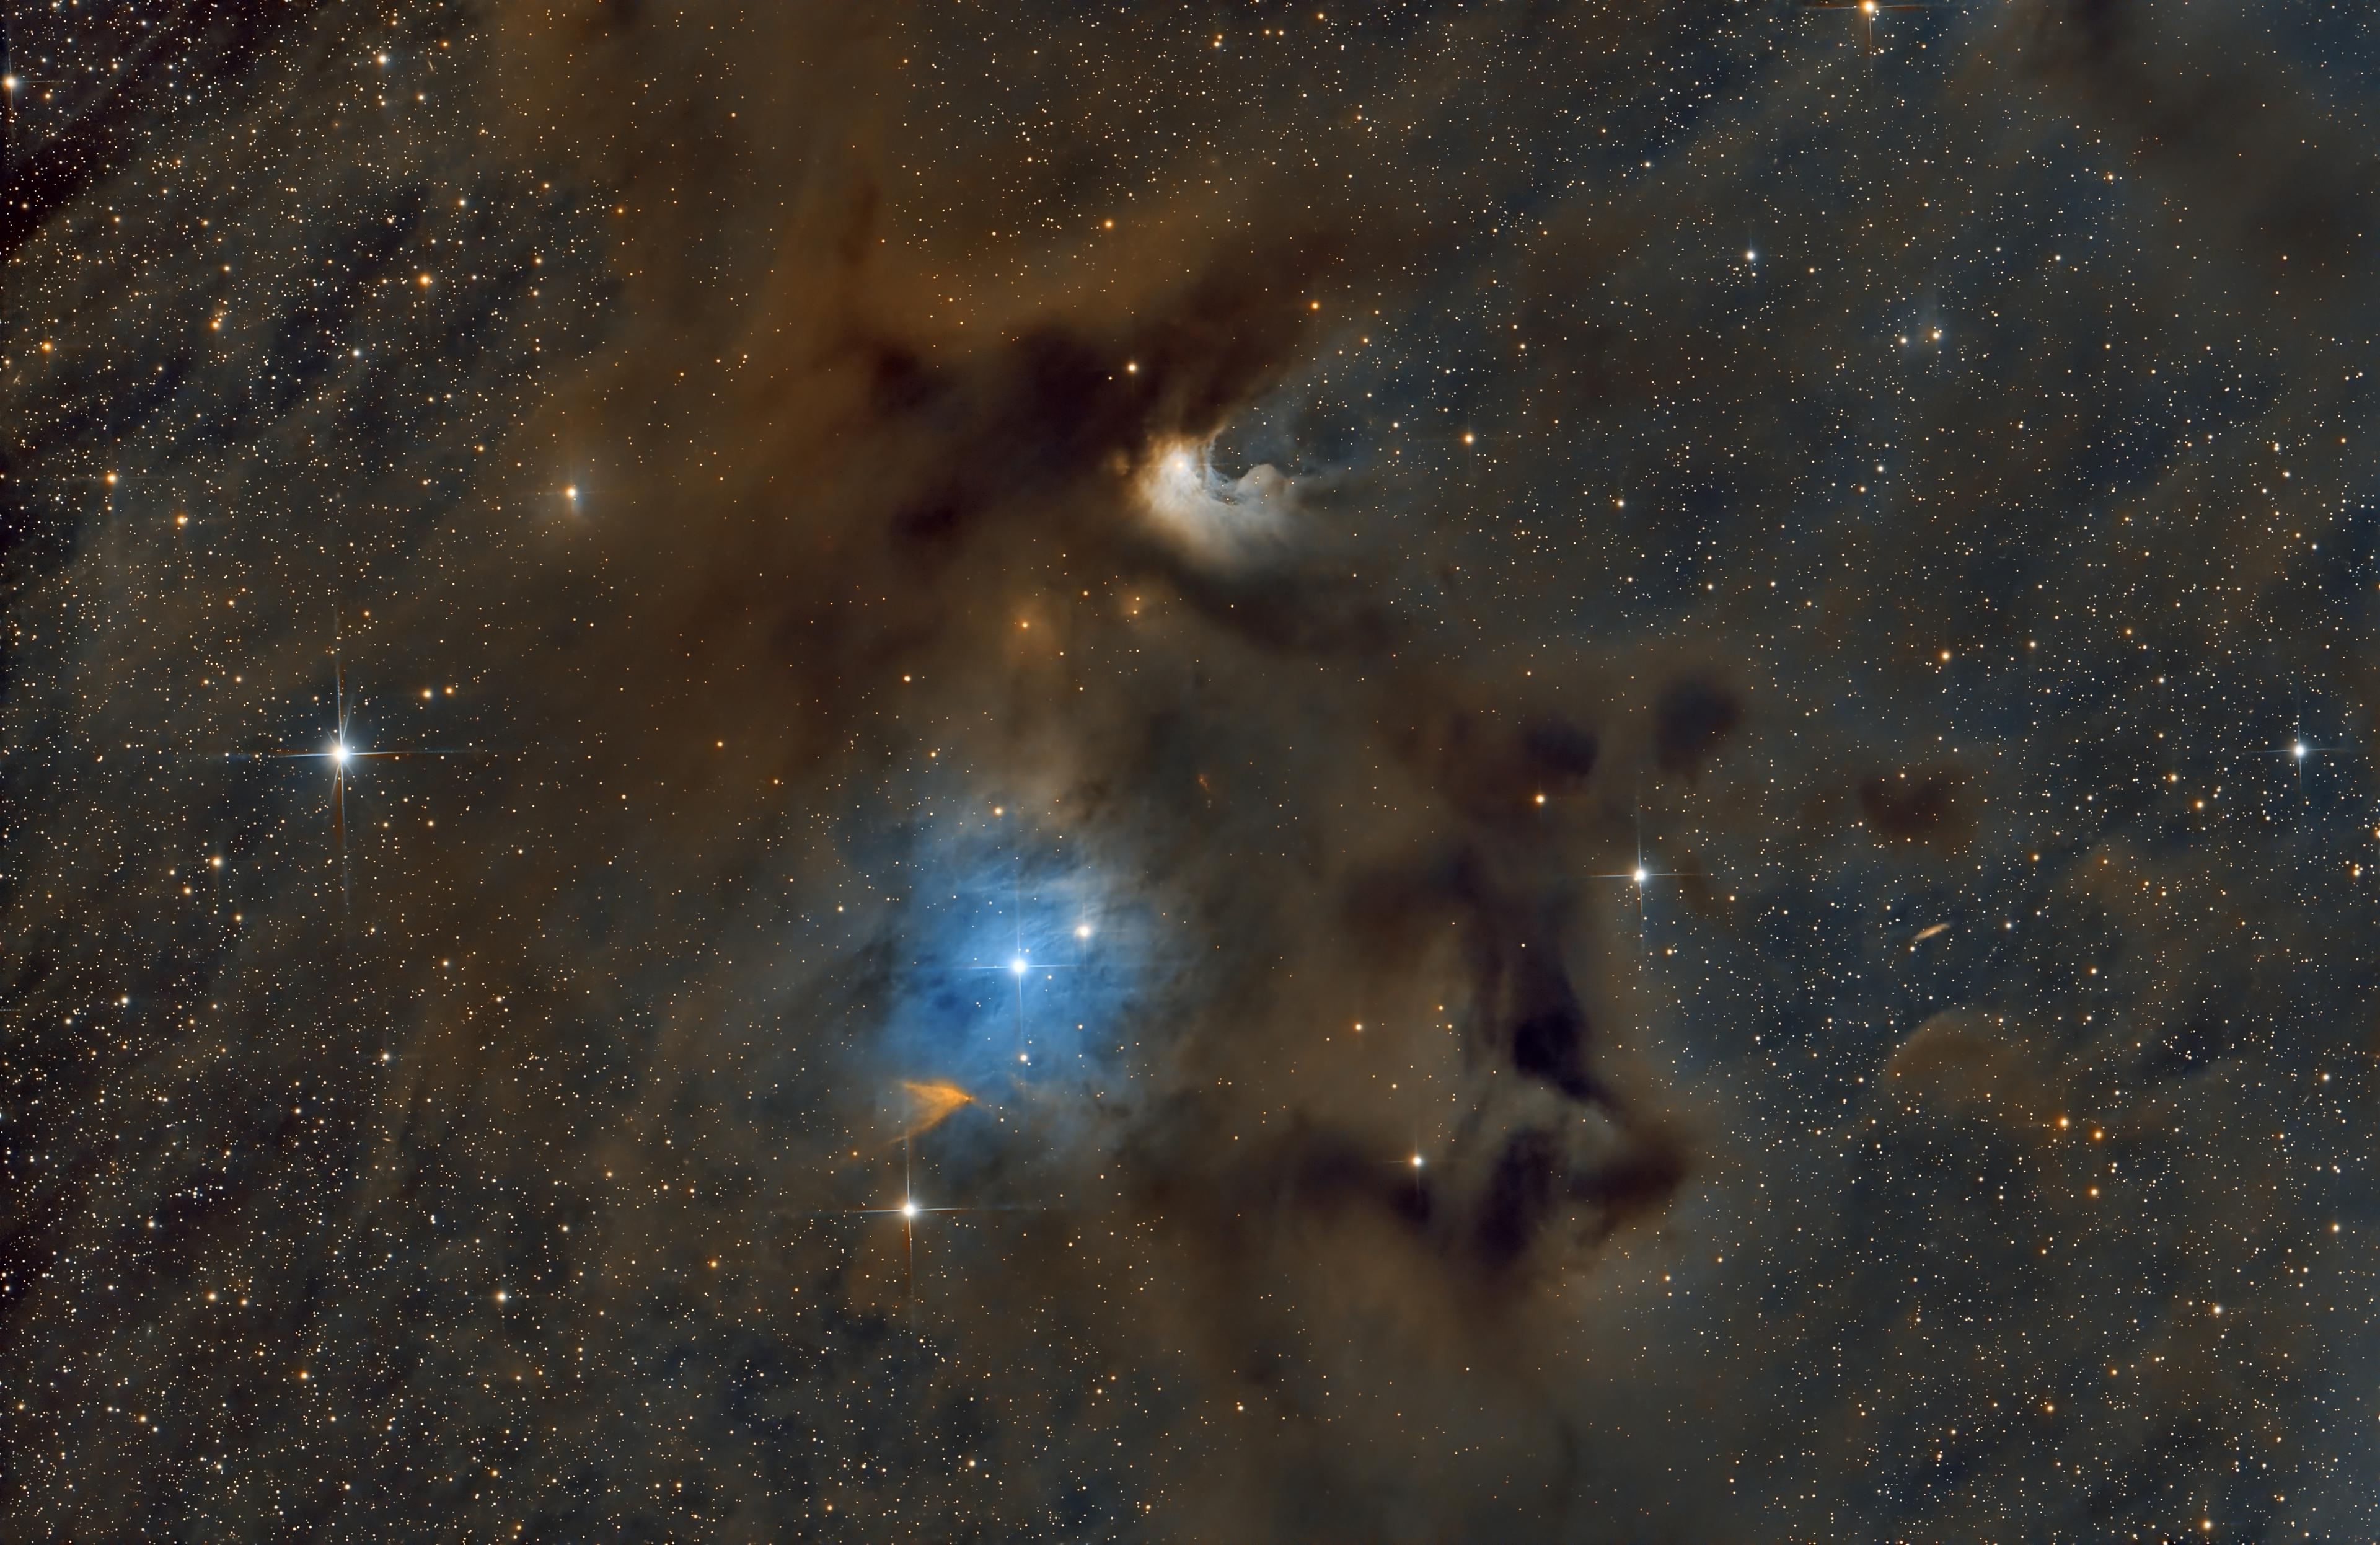 سُدم وأغبرة عاتمة بلون بني يتوسّطها منطقة ساطعة بلون أزرق مع تناثر نقاط النجوم المضيئة عبر الصورة